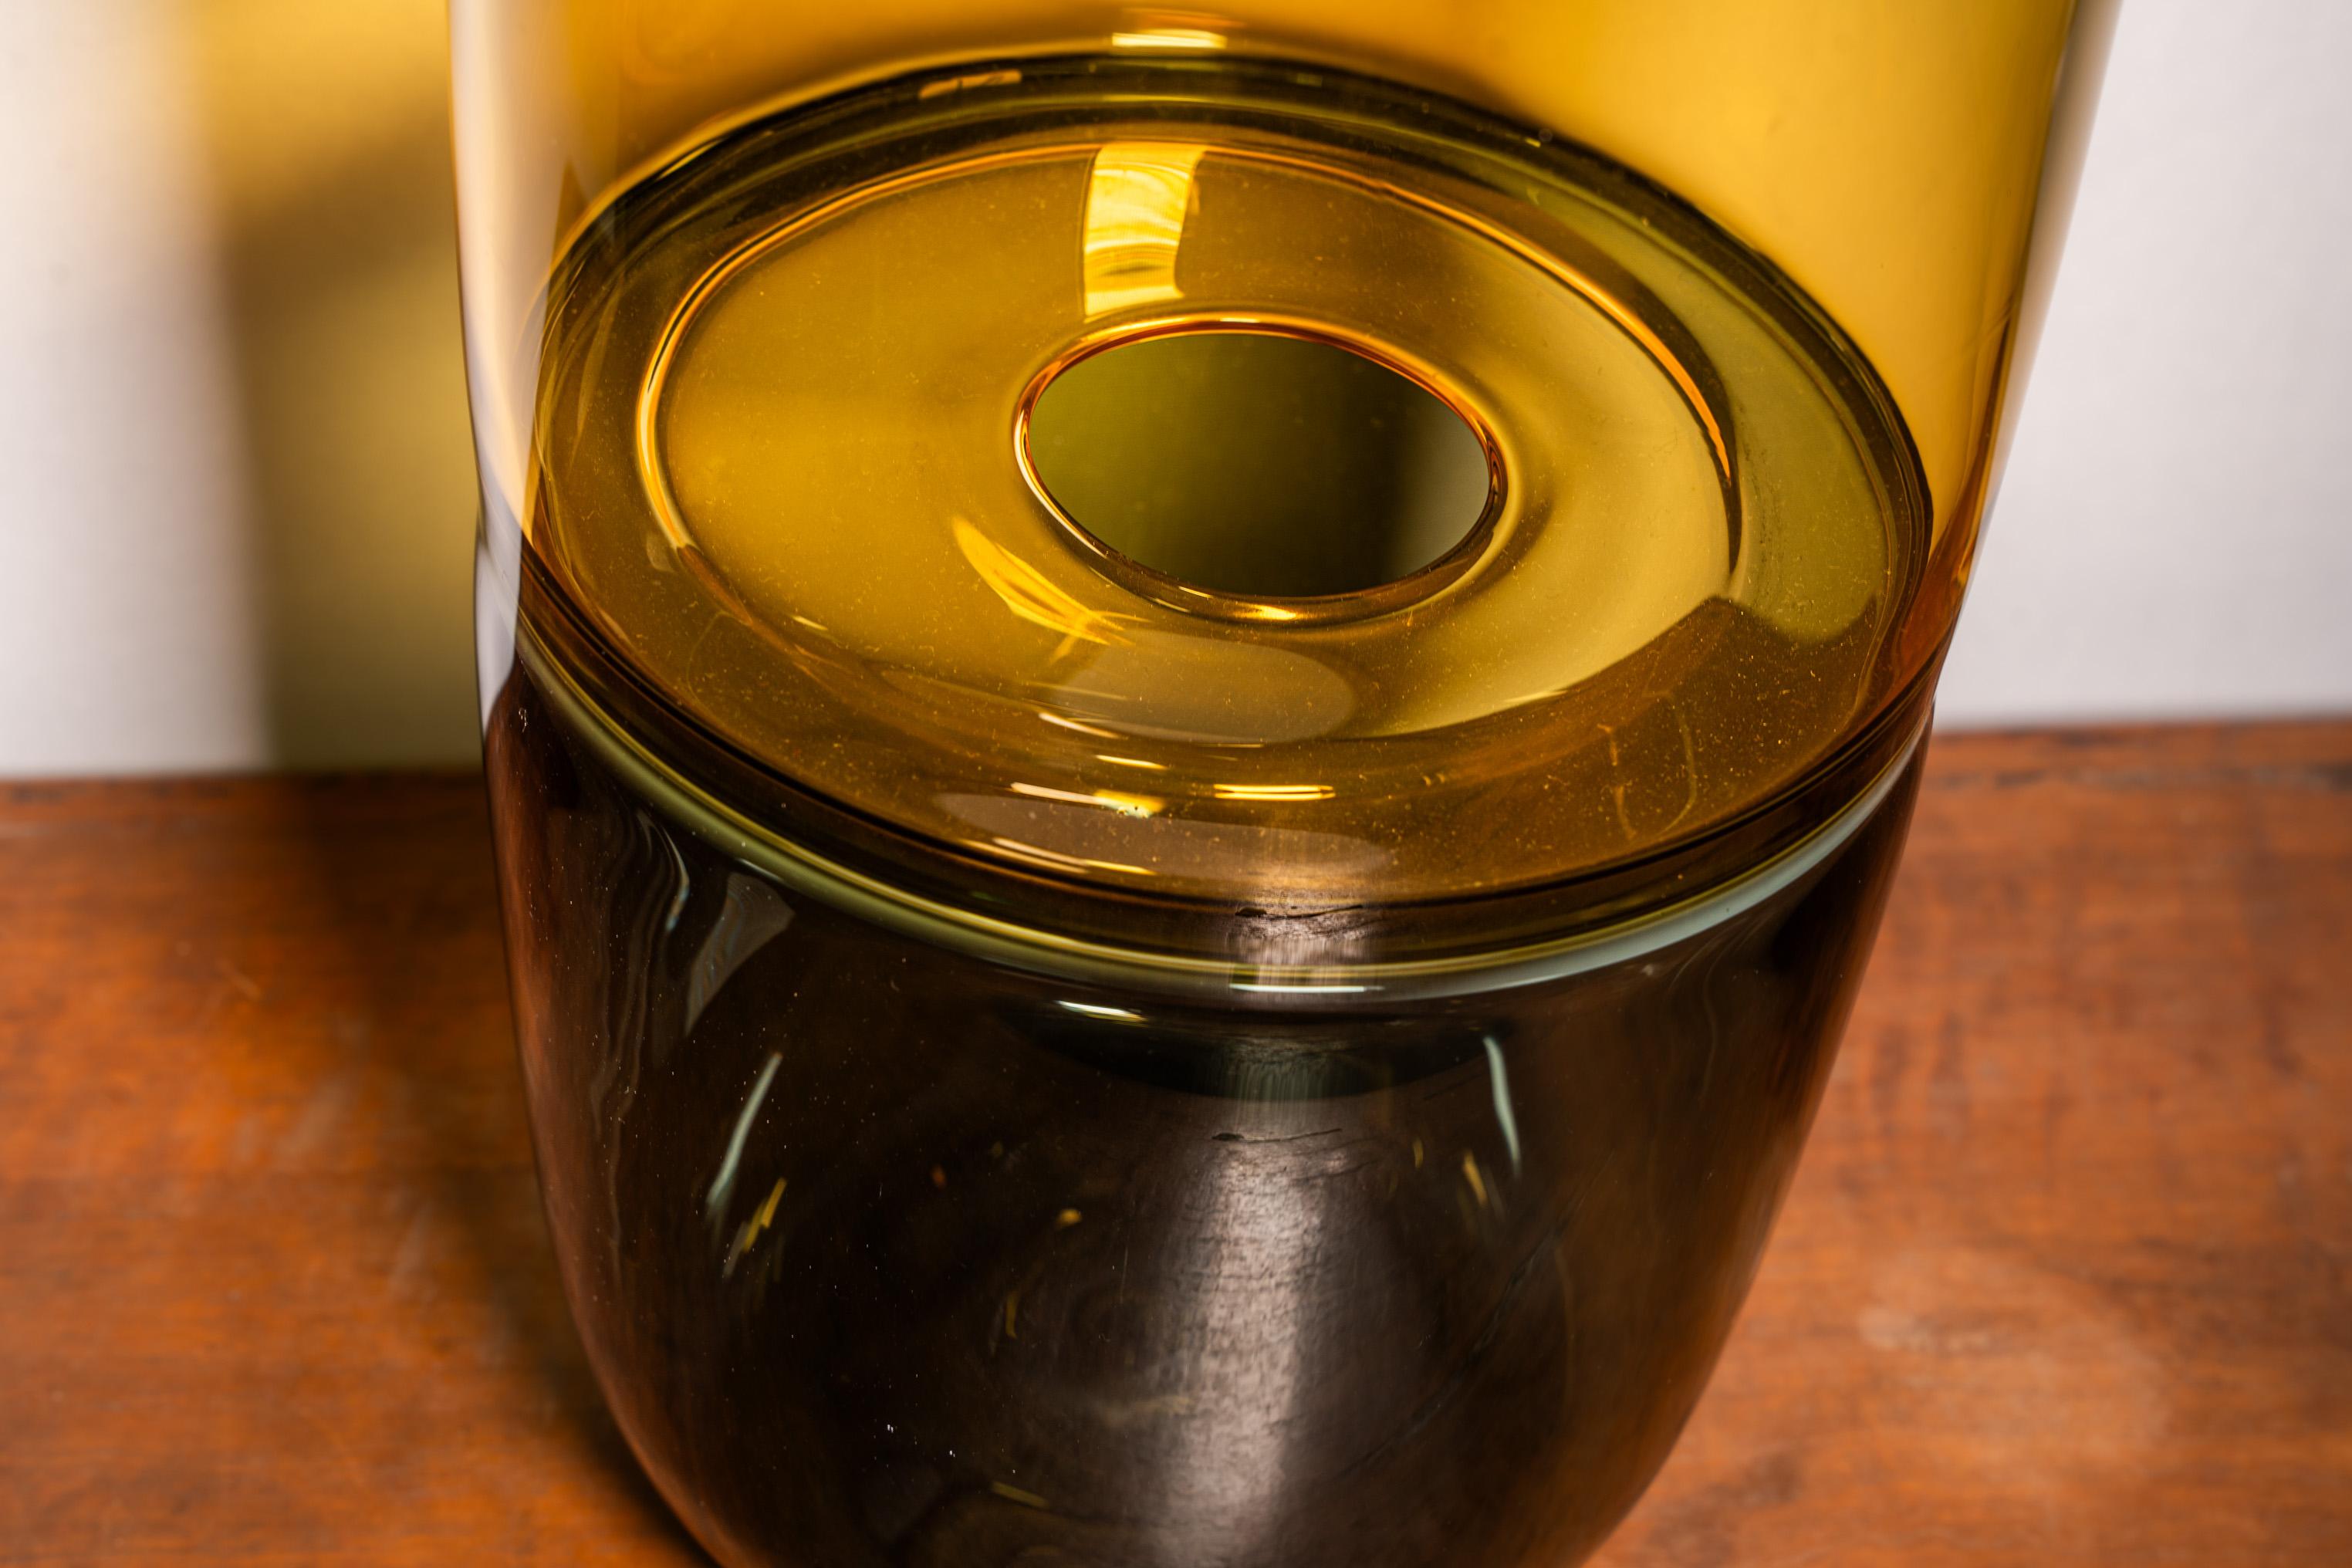 Großer Behälter in Gold- und Blautönen, hergestellt mit Inzaltechnik
Geschaffen und hergestellt von Paolo Crepax, produziert von der Firma Mian in Murano, Venedig